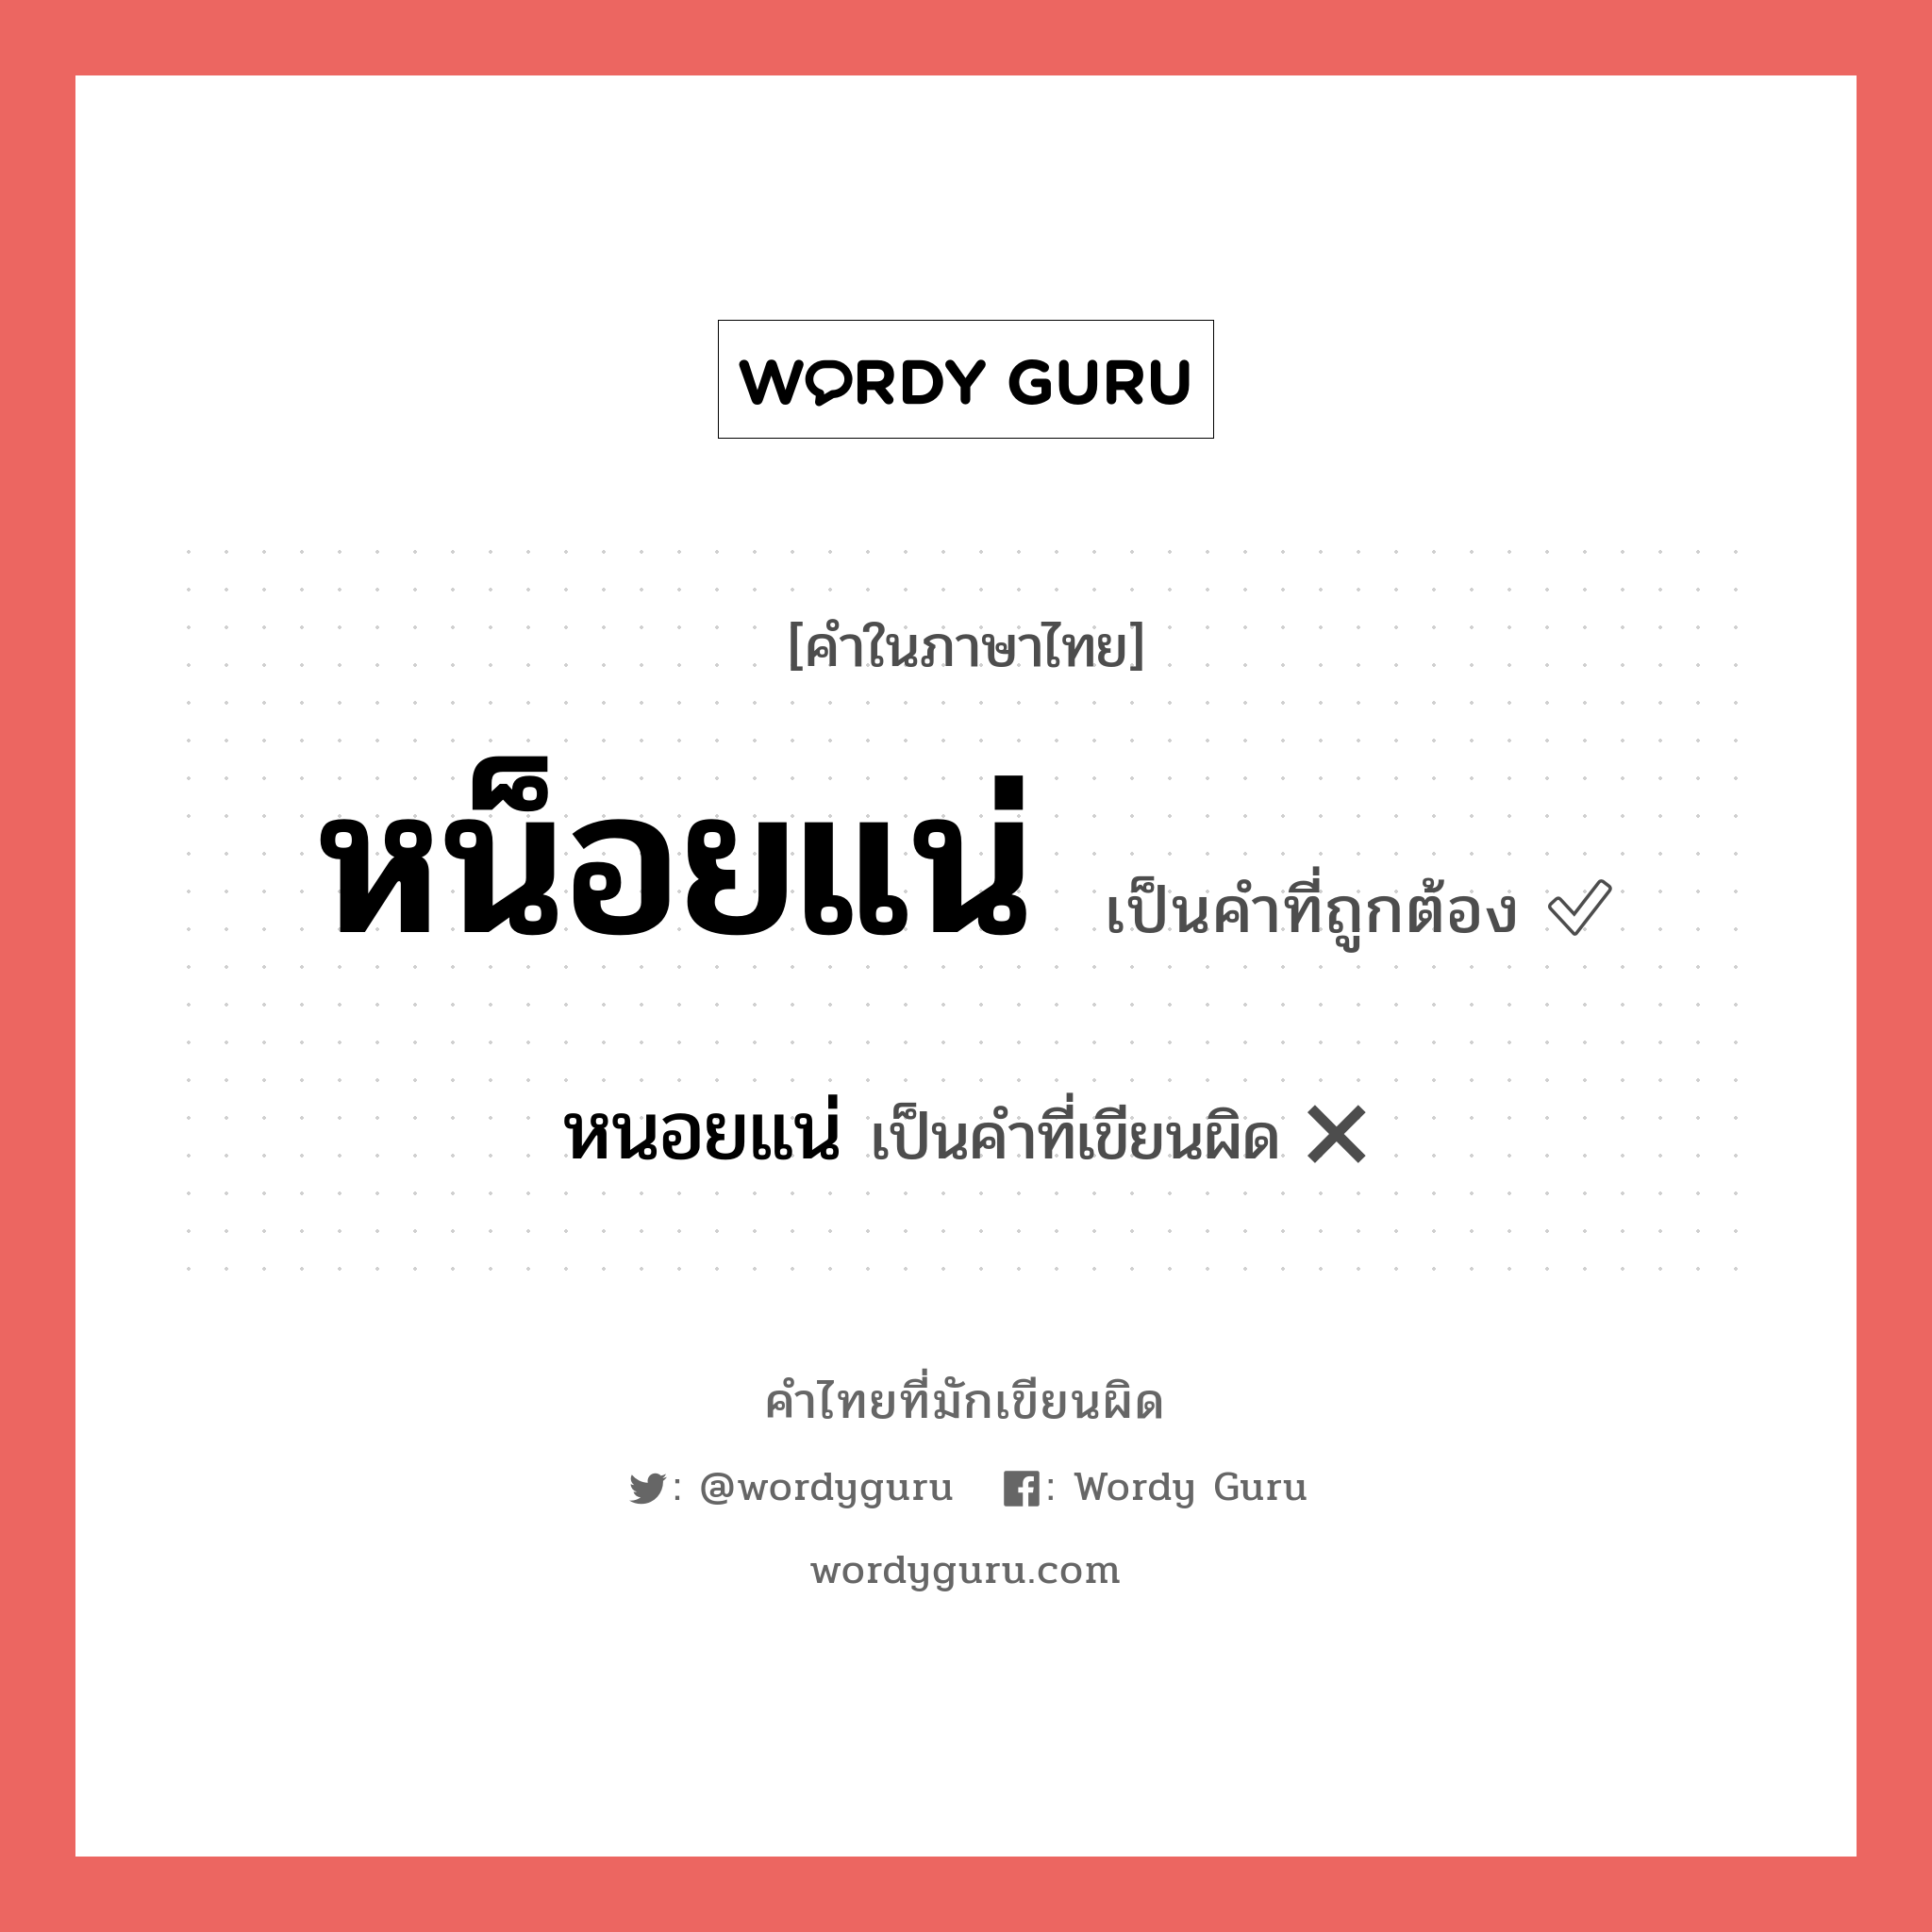 หนอยแน่ หรือ หน็อยแน่ คำไหนเขียนถูก?, คำในภาษาไทยที่มักเขียนผิด หนอยแน่ คำที่ผิด ❌ หน็อยแน่